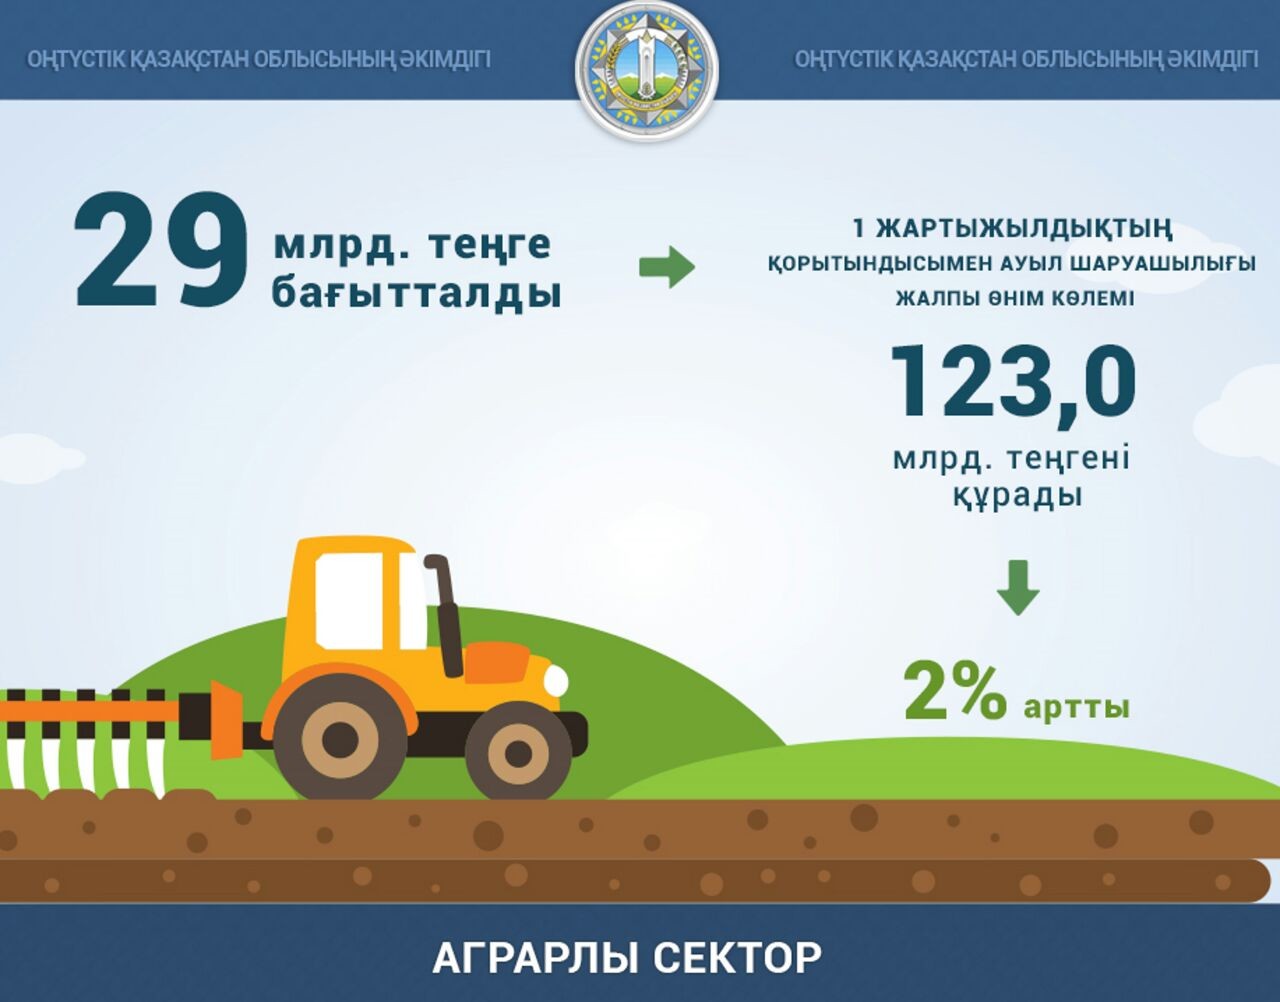 В ЮКО на 123 млрд. тенге произведена сельхоз продукция